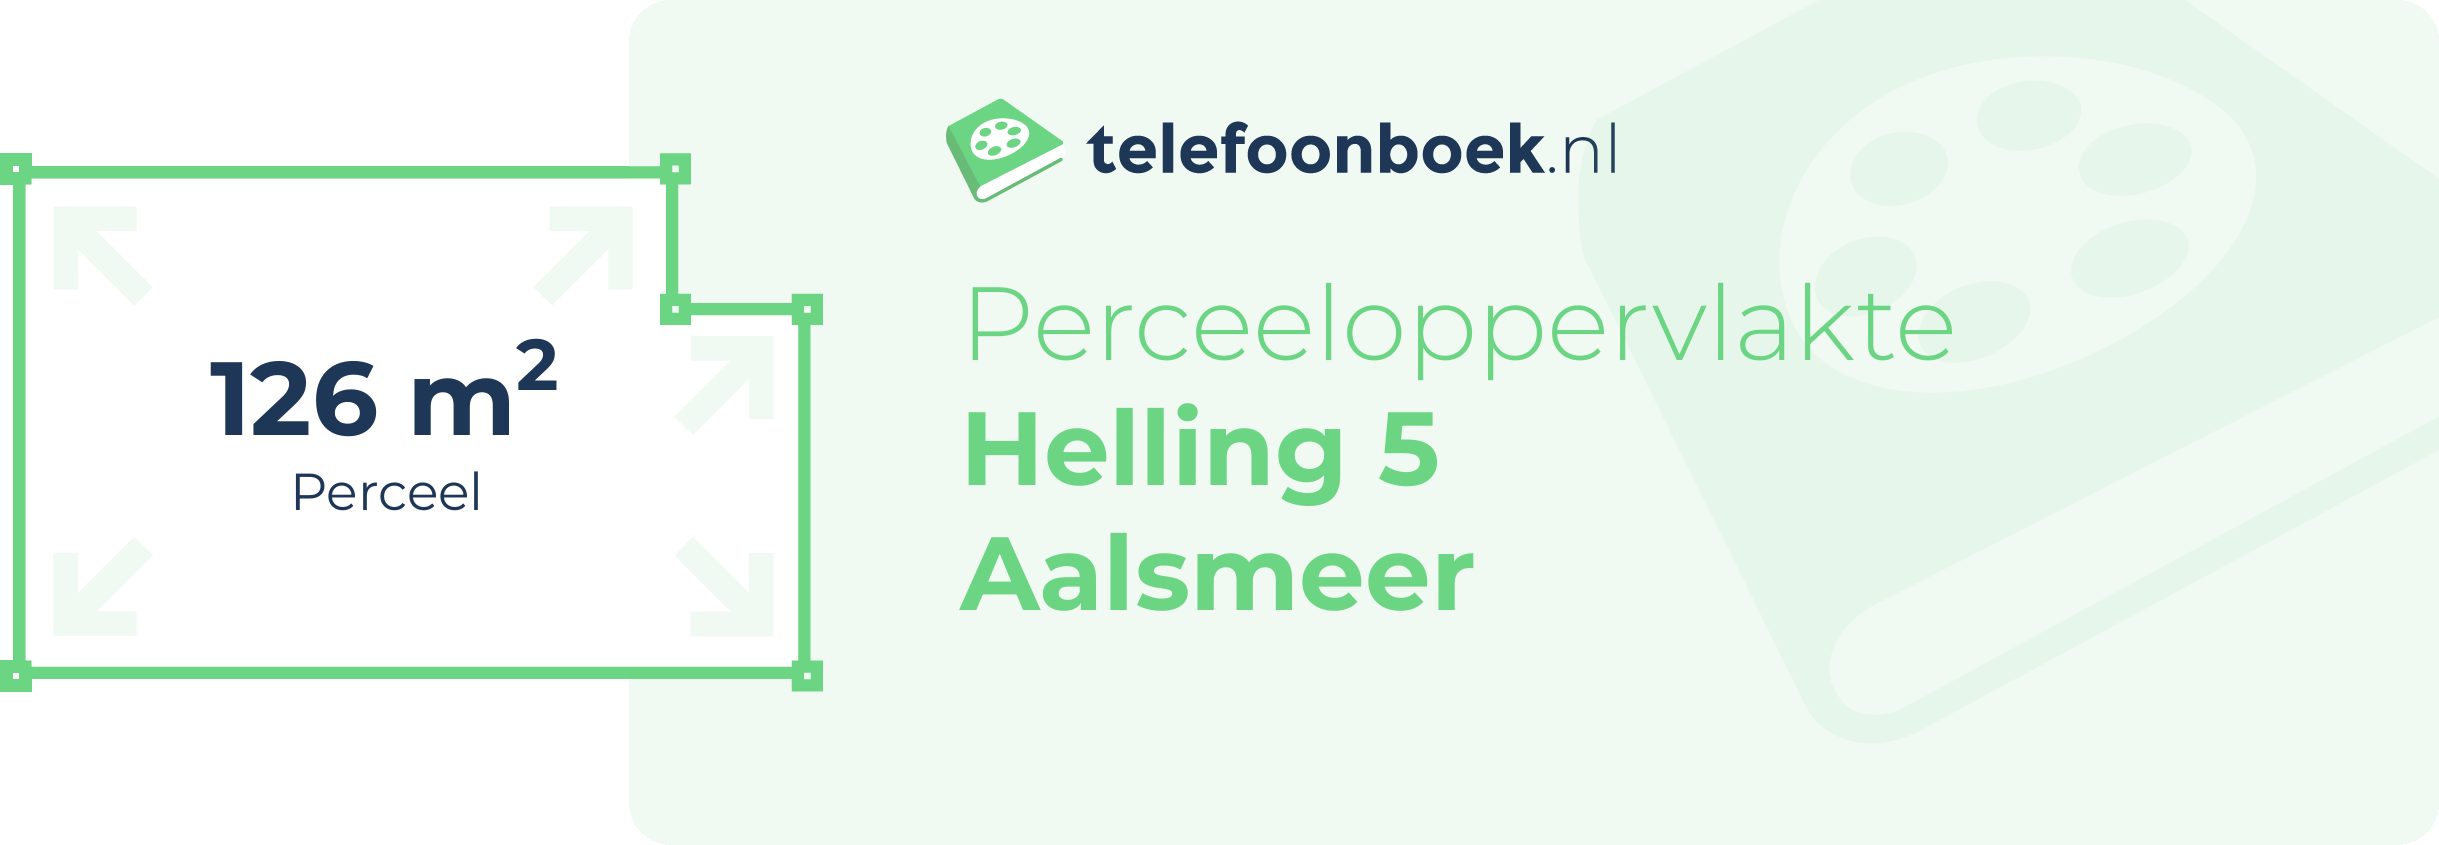 Perceeloppervlakte Helling 5 Aalsmeer